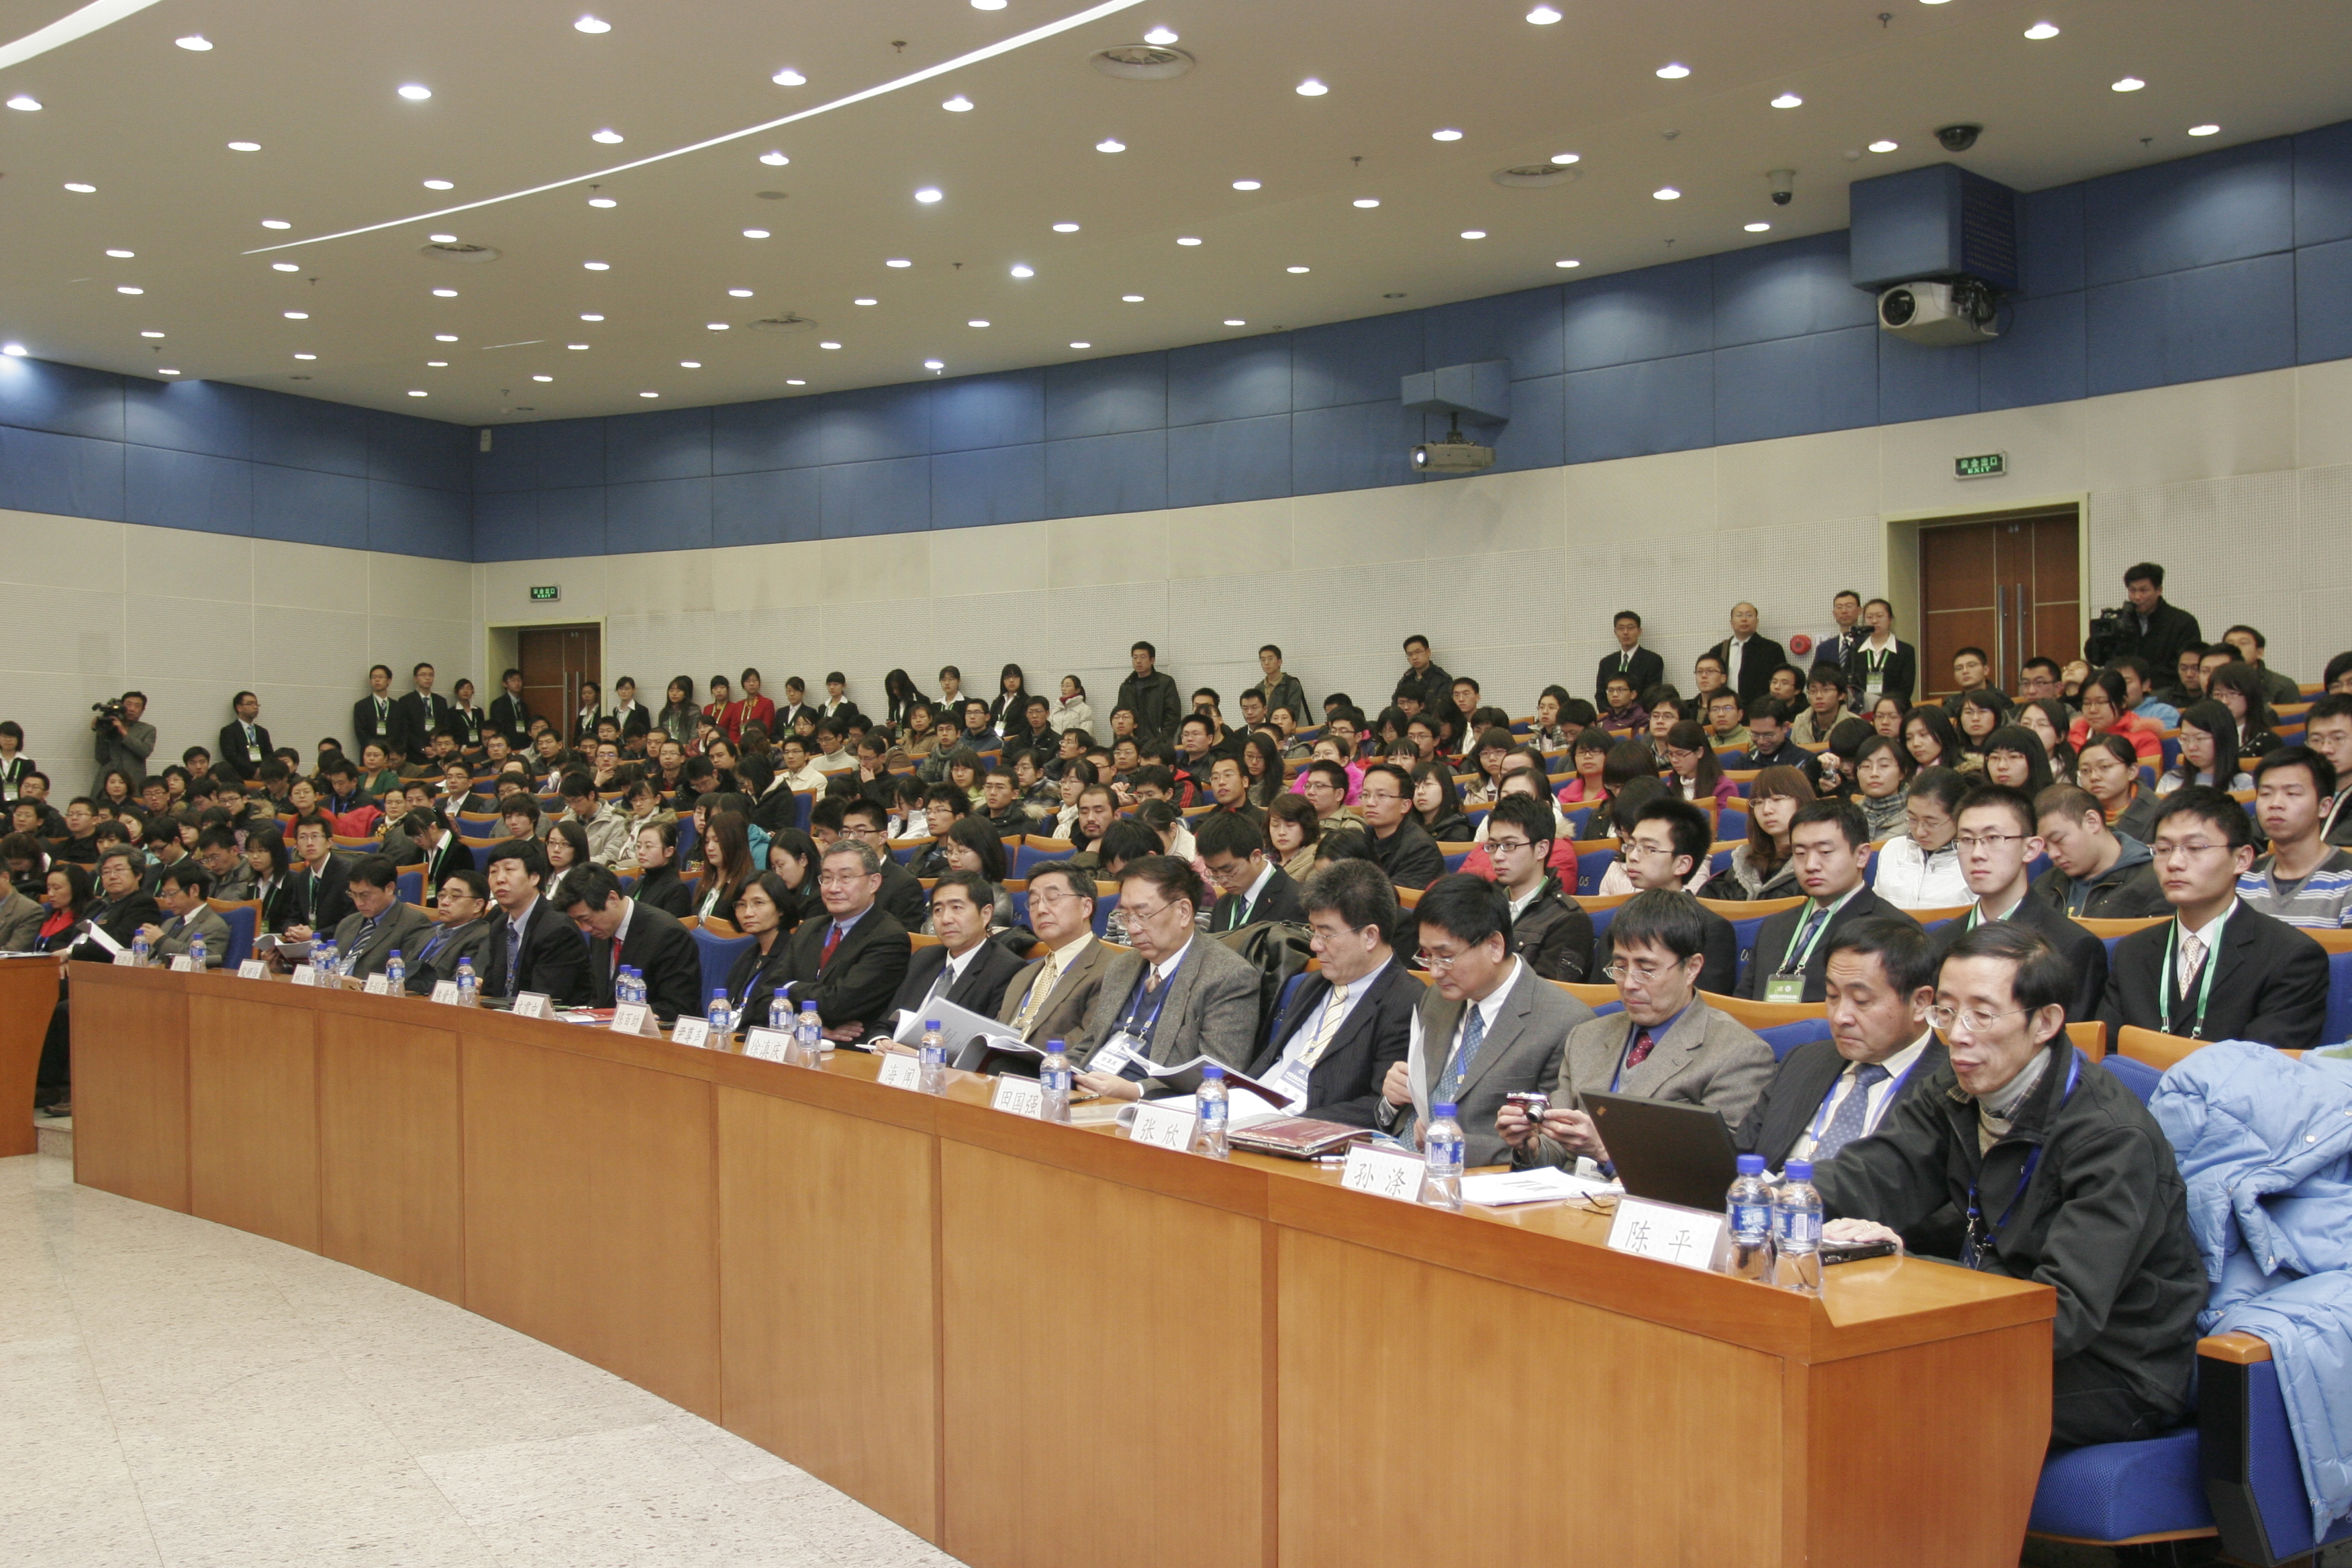 Conference Participants